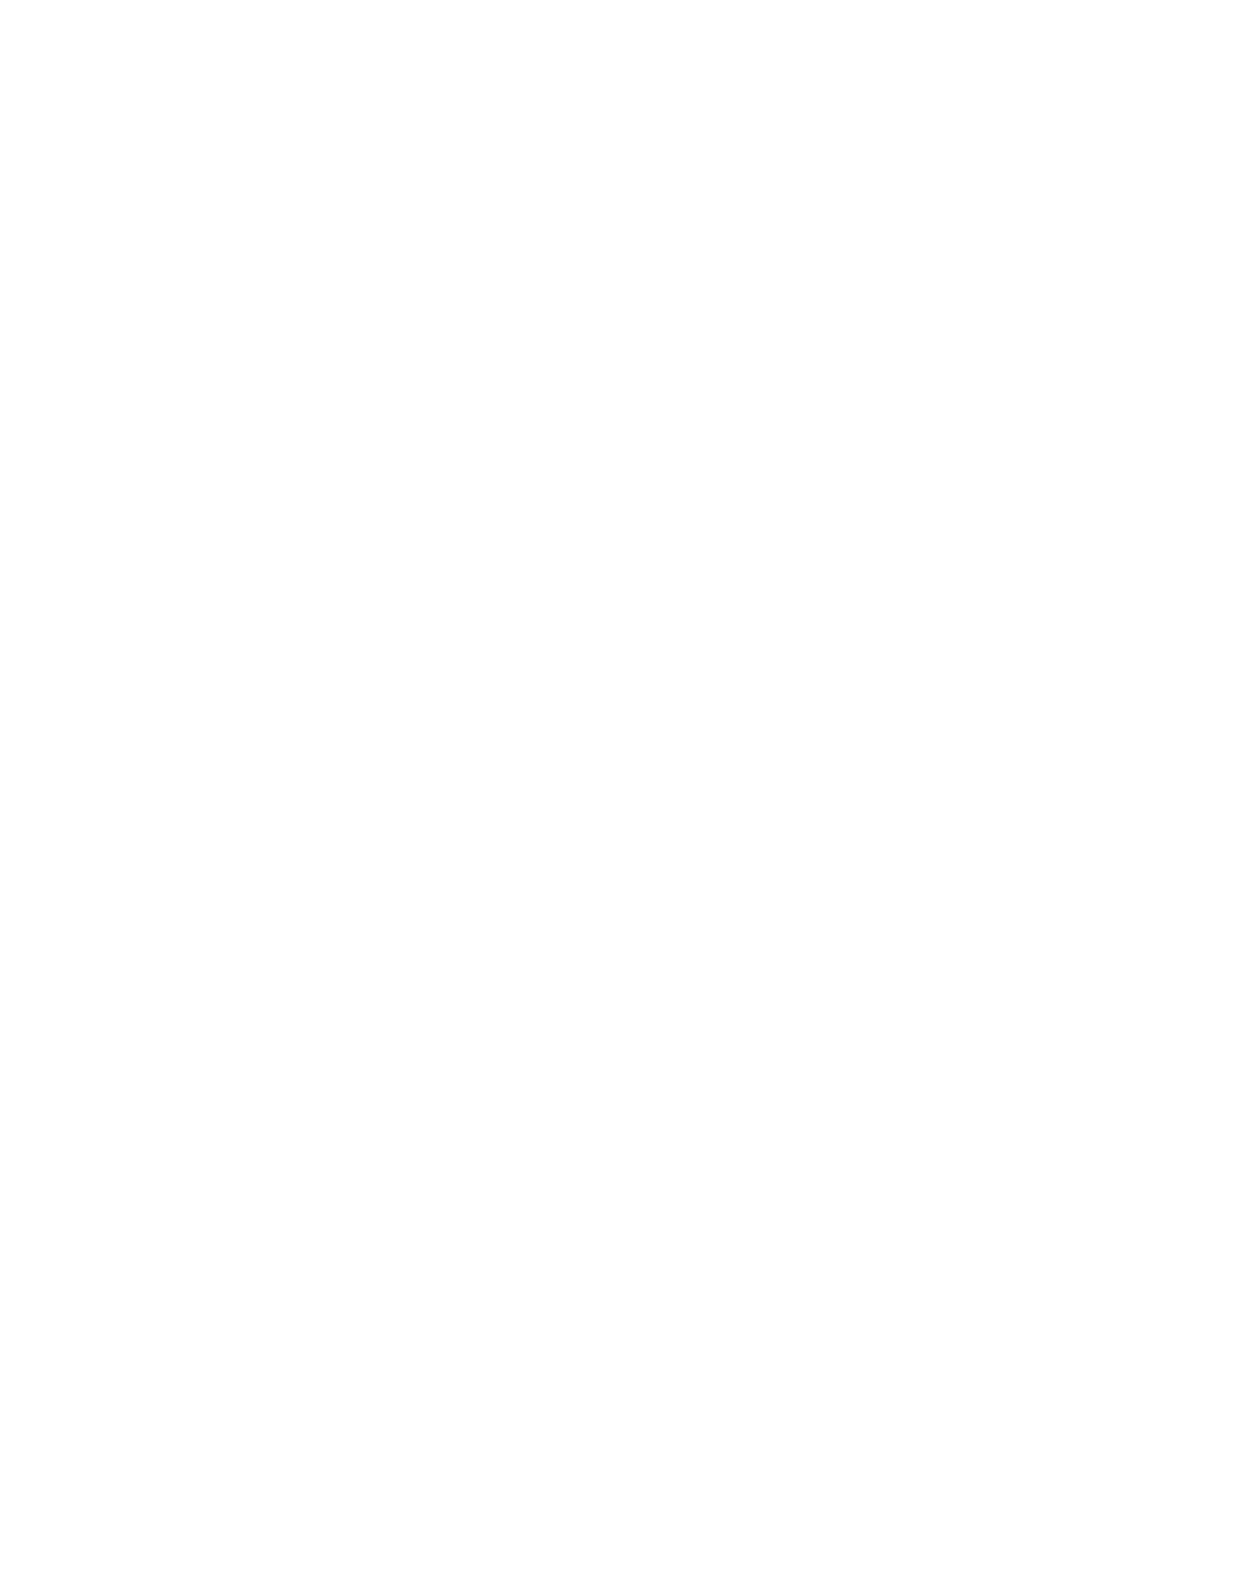 Carolina Film Studio